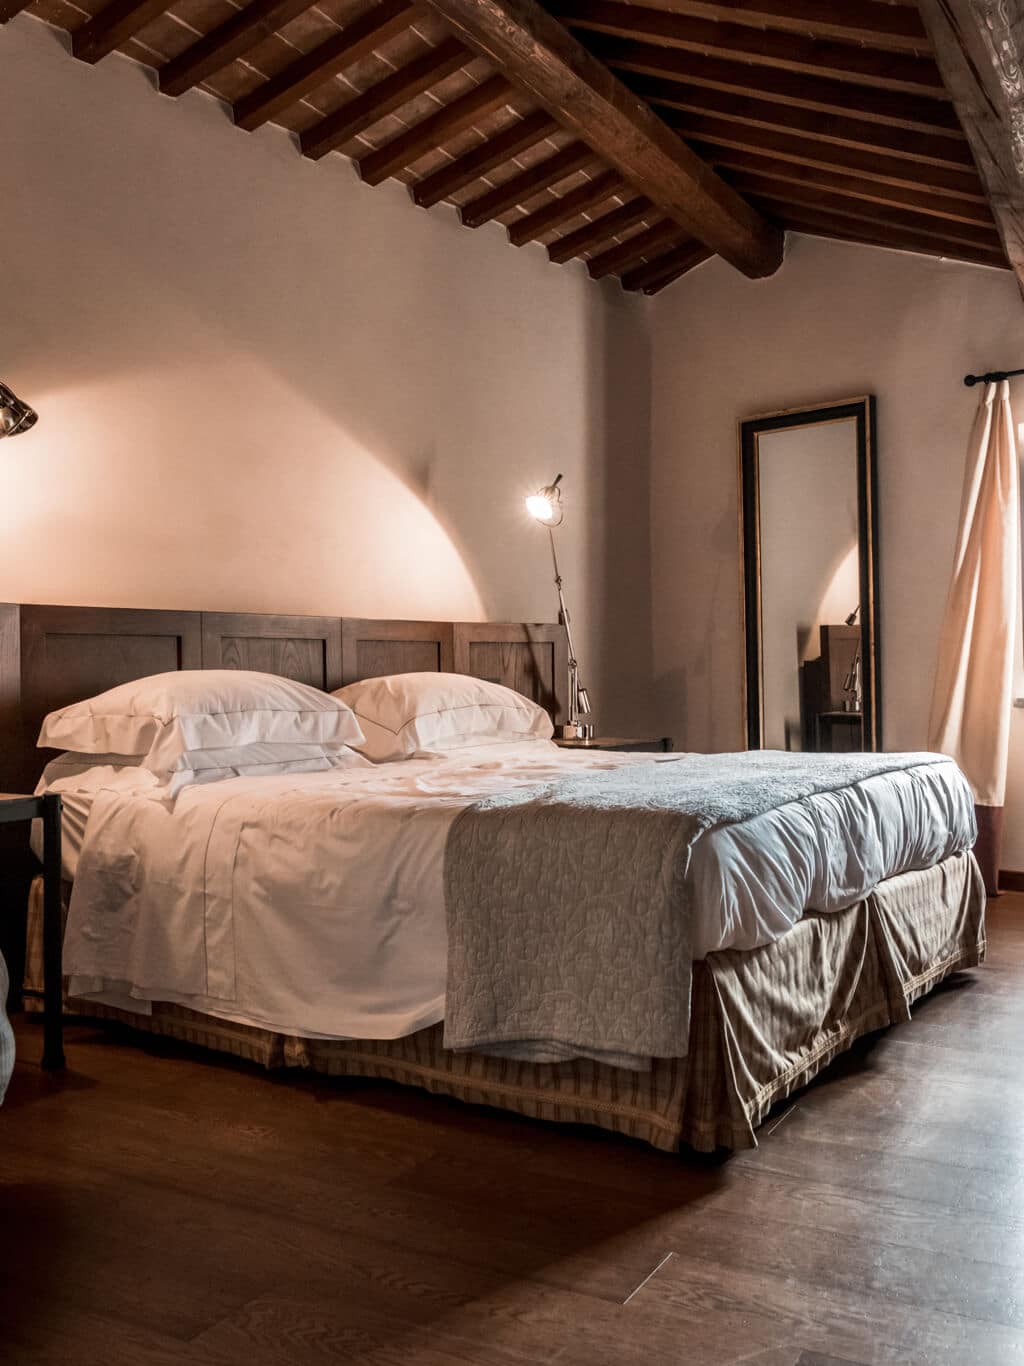 Beautiful hotel in Tuscany, Italy - Castel Monastero Resort & Spa